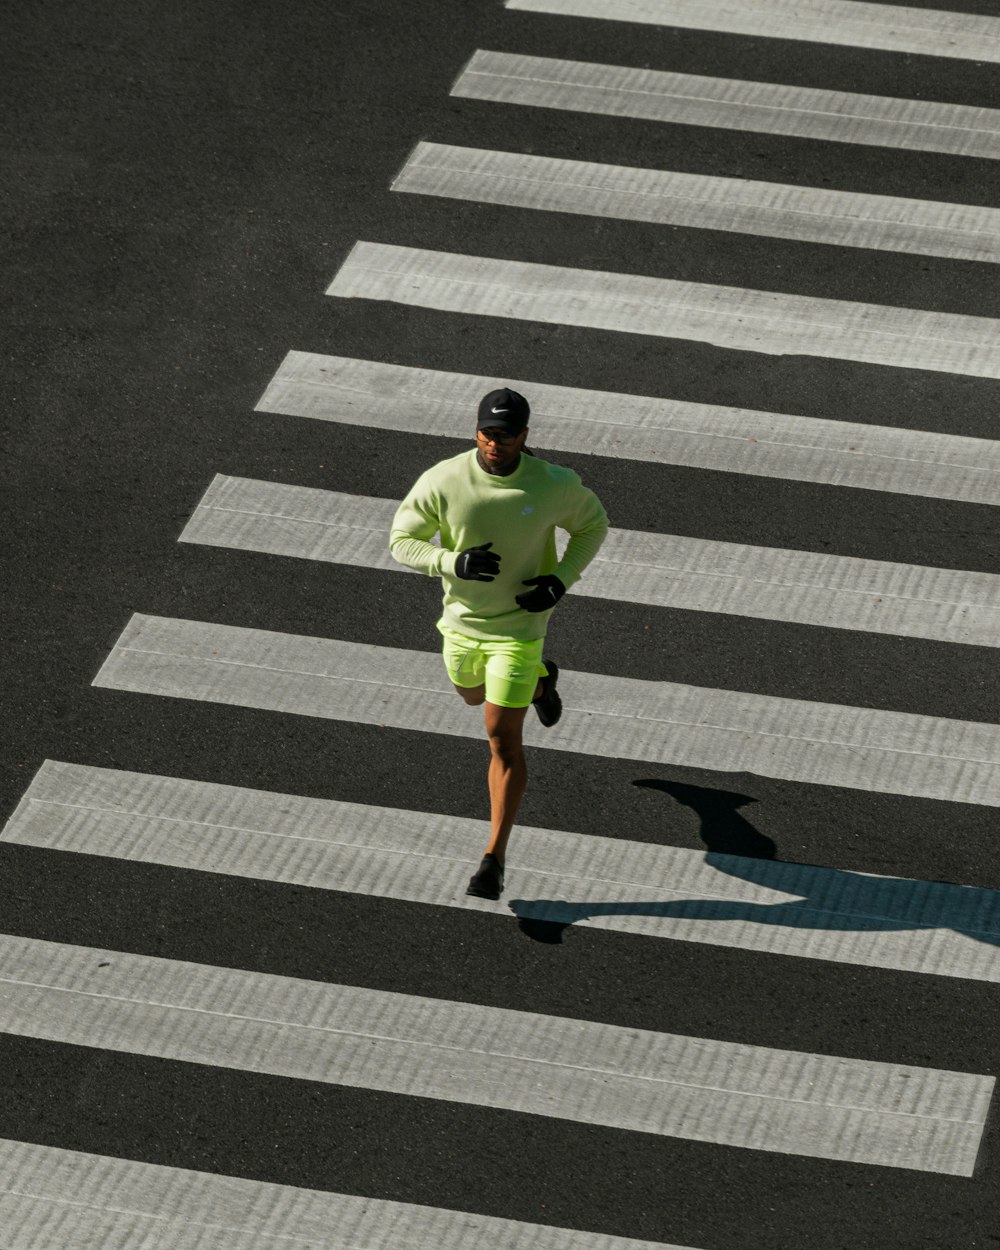 녹색 옷을 입은 남자가 거리를 가로질러 달리고 있다